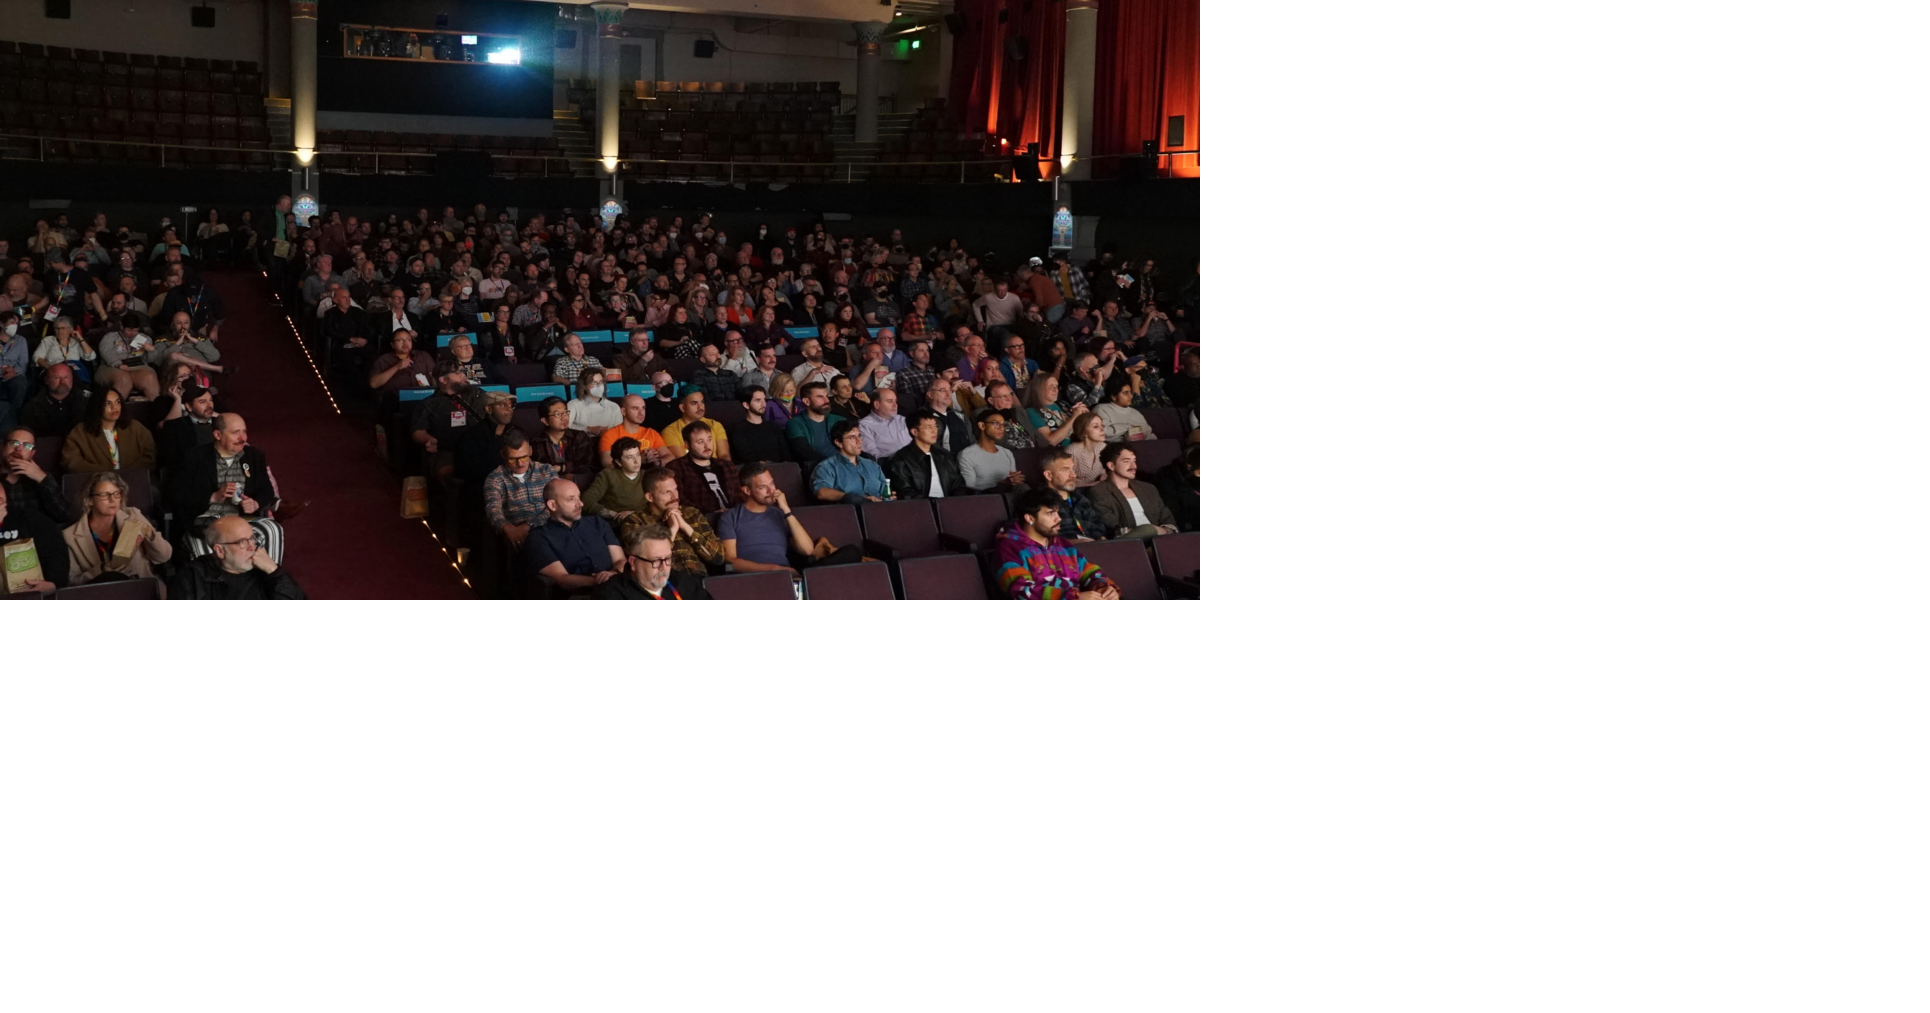 第28届西雅图酷儿电影节通过电影展现酷儿的快乐和社群